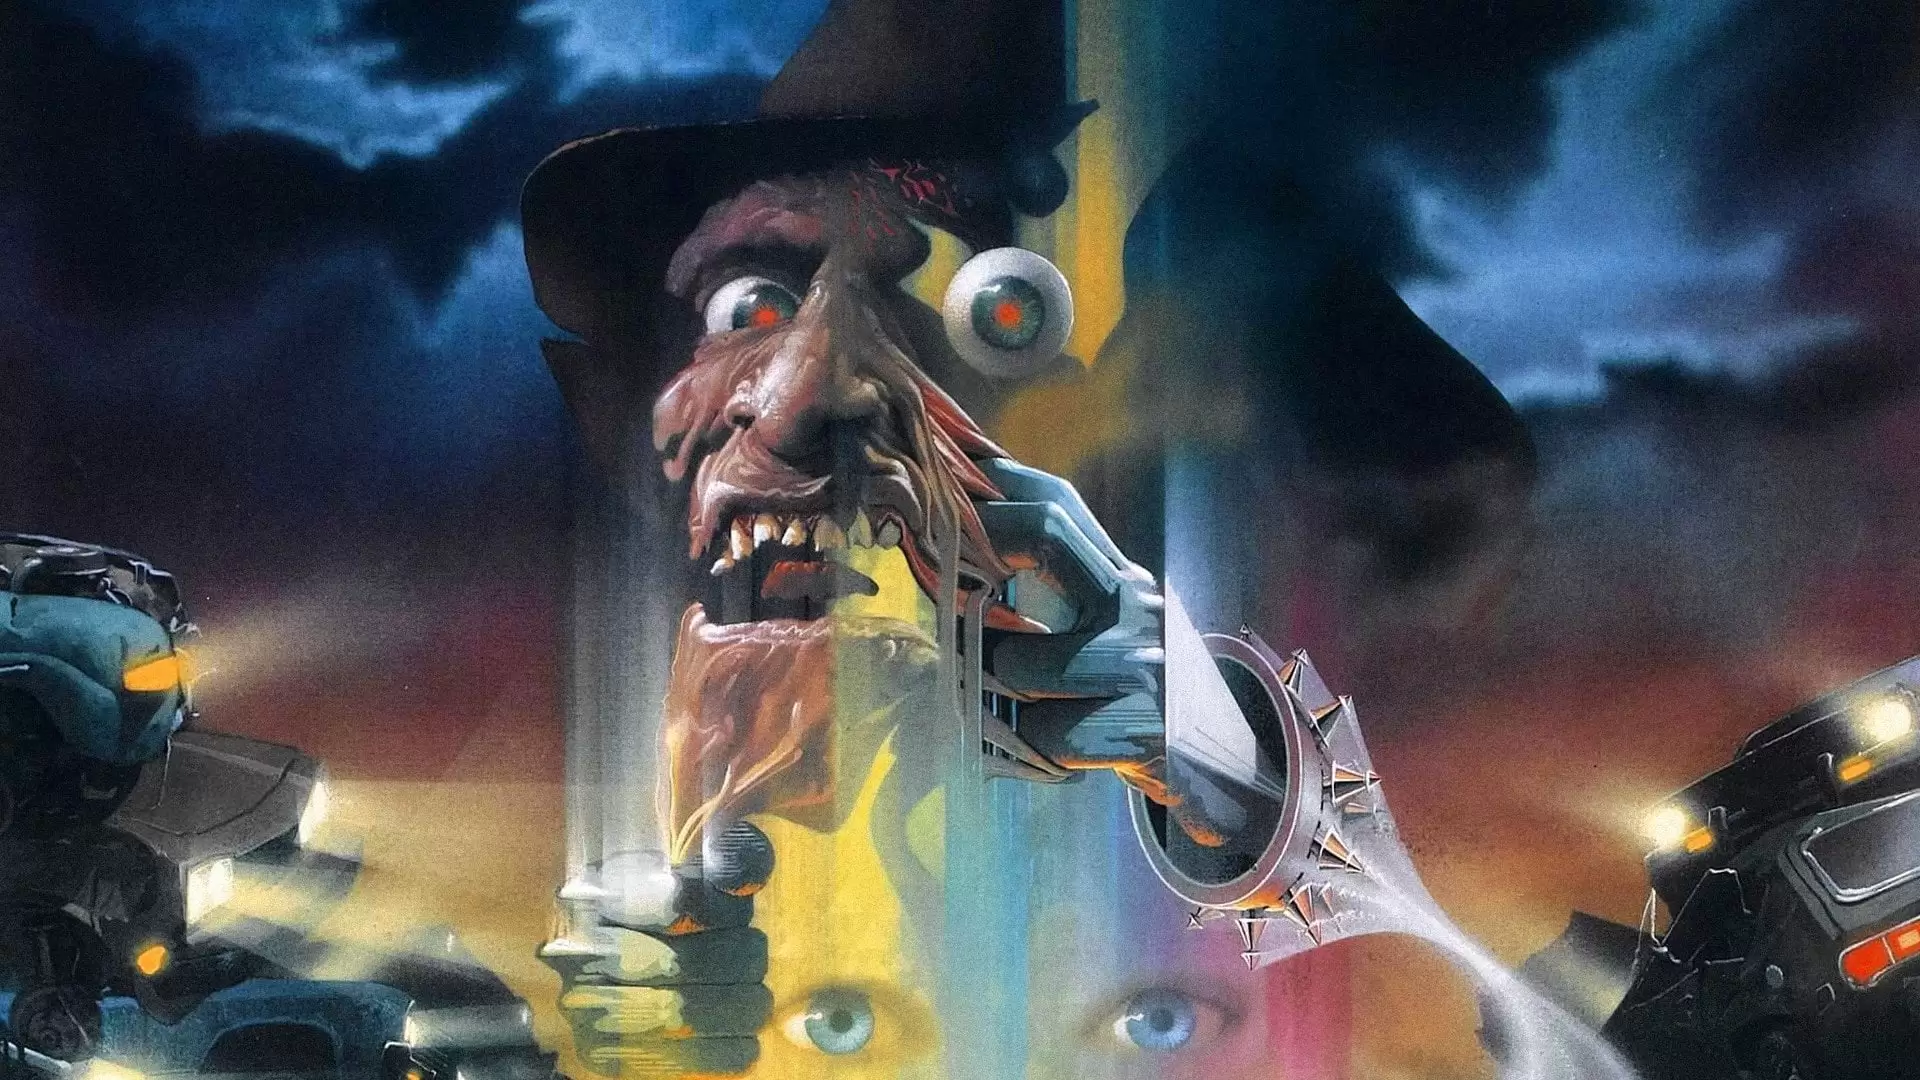 دانلود فیلم A Nightmare on Elm Street 4: The Dream Master 1988 (کابوس در خیابان الم ۴: استاد رؤیایی) با زیرنویس فارسی